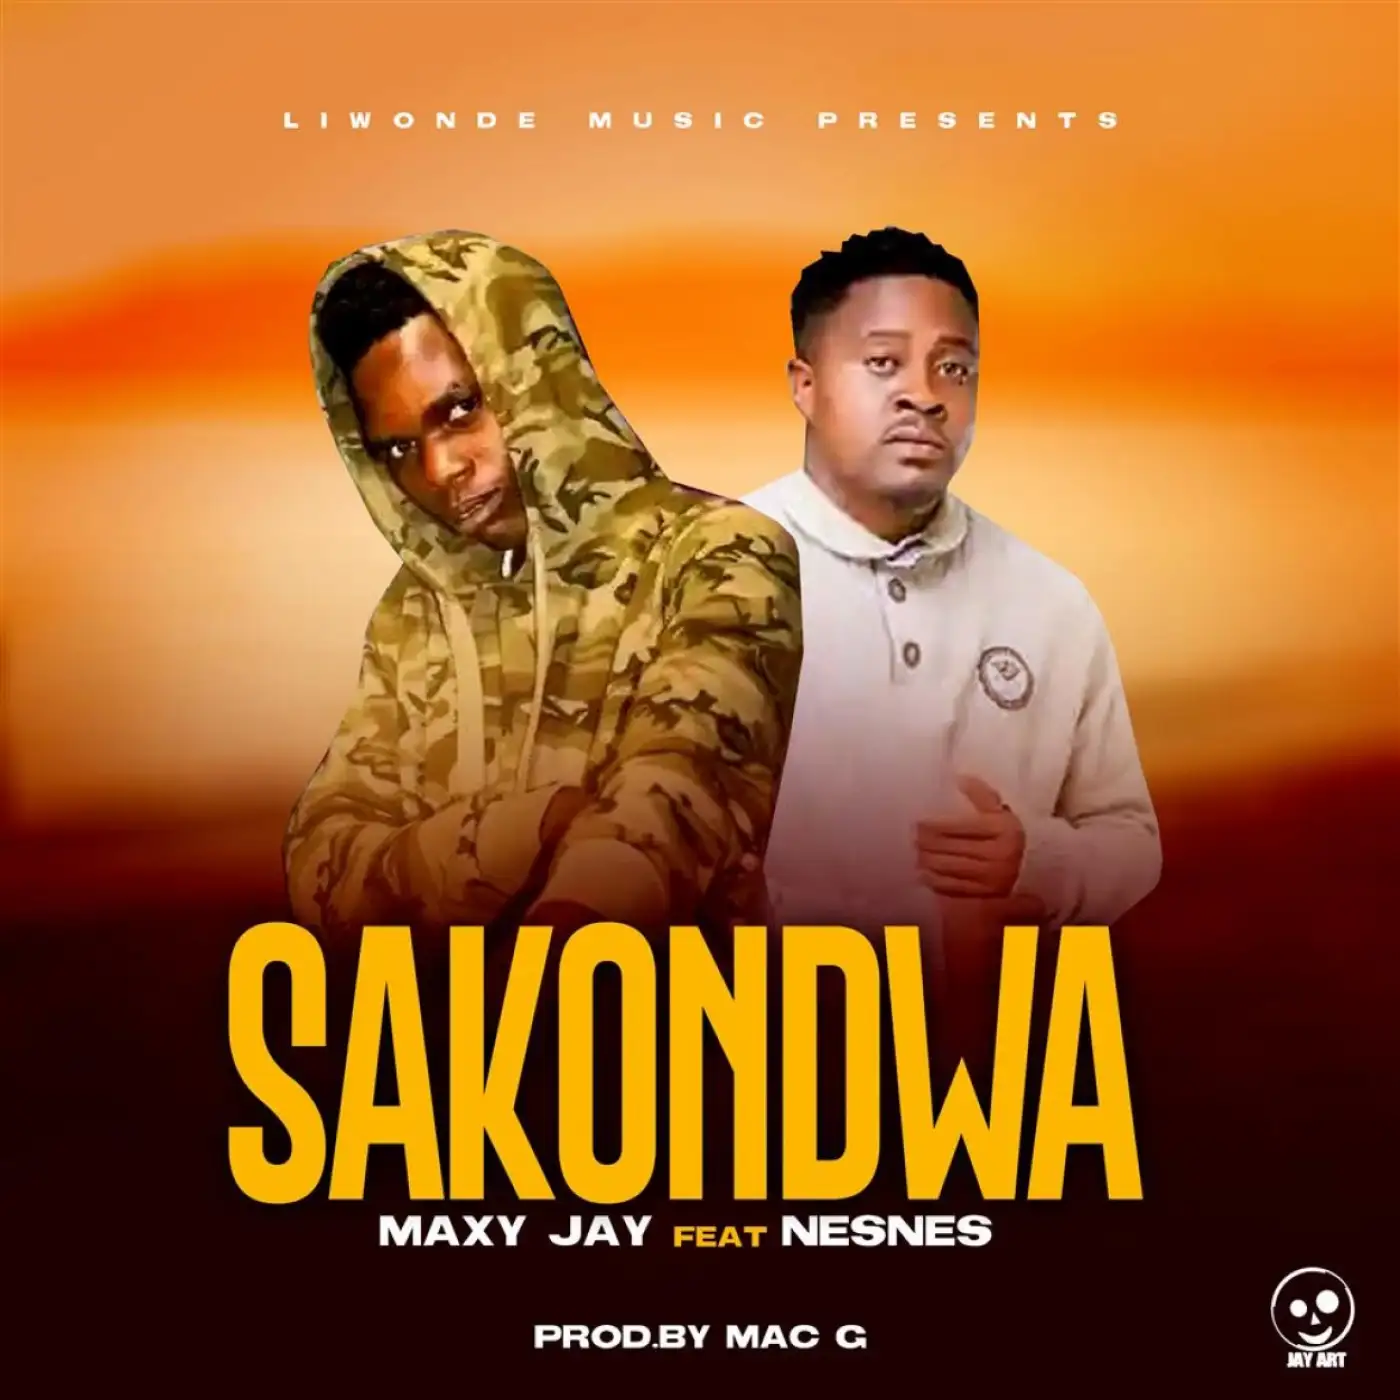 Maxy Jay-Maxy Jay - Sakondwa ft Nesnes (Prod. Mac G)-song artwork cover